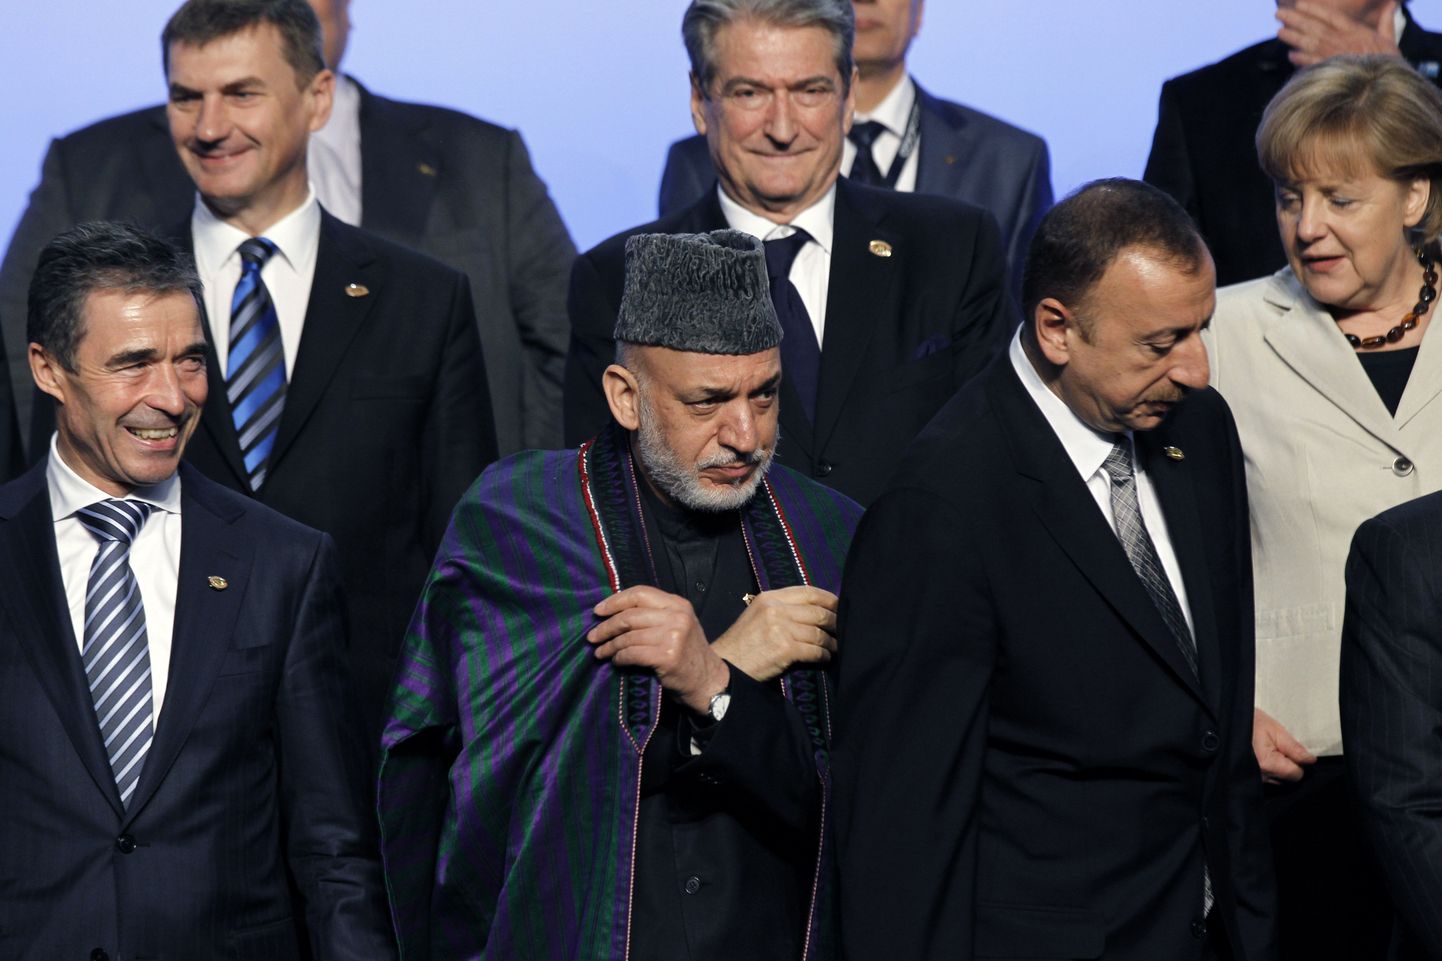 NATO tippkohtumise grupipildil seisavad (taga vasakult) Eesti peaminister Andrus Ansip, Albaania valitsusjuht Sali Berisha ja Saksa kantsler Angela Merkel. Ees seisavad (vasakult) NATO peasekretär Anders Fogh Rasmussen, Afganistani president Hamid Karzai ja Aserbaidžaani president Ilham Alijev.